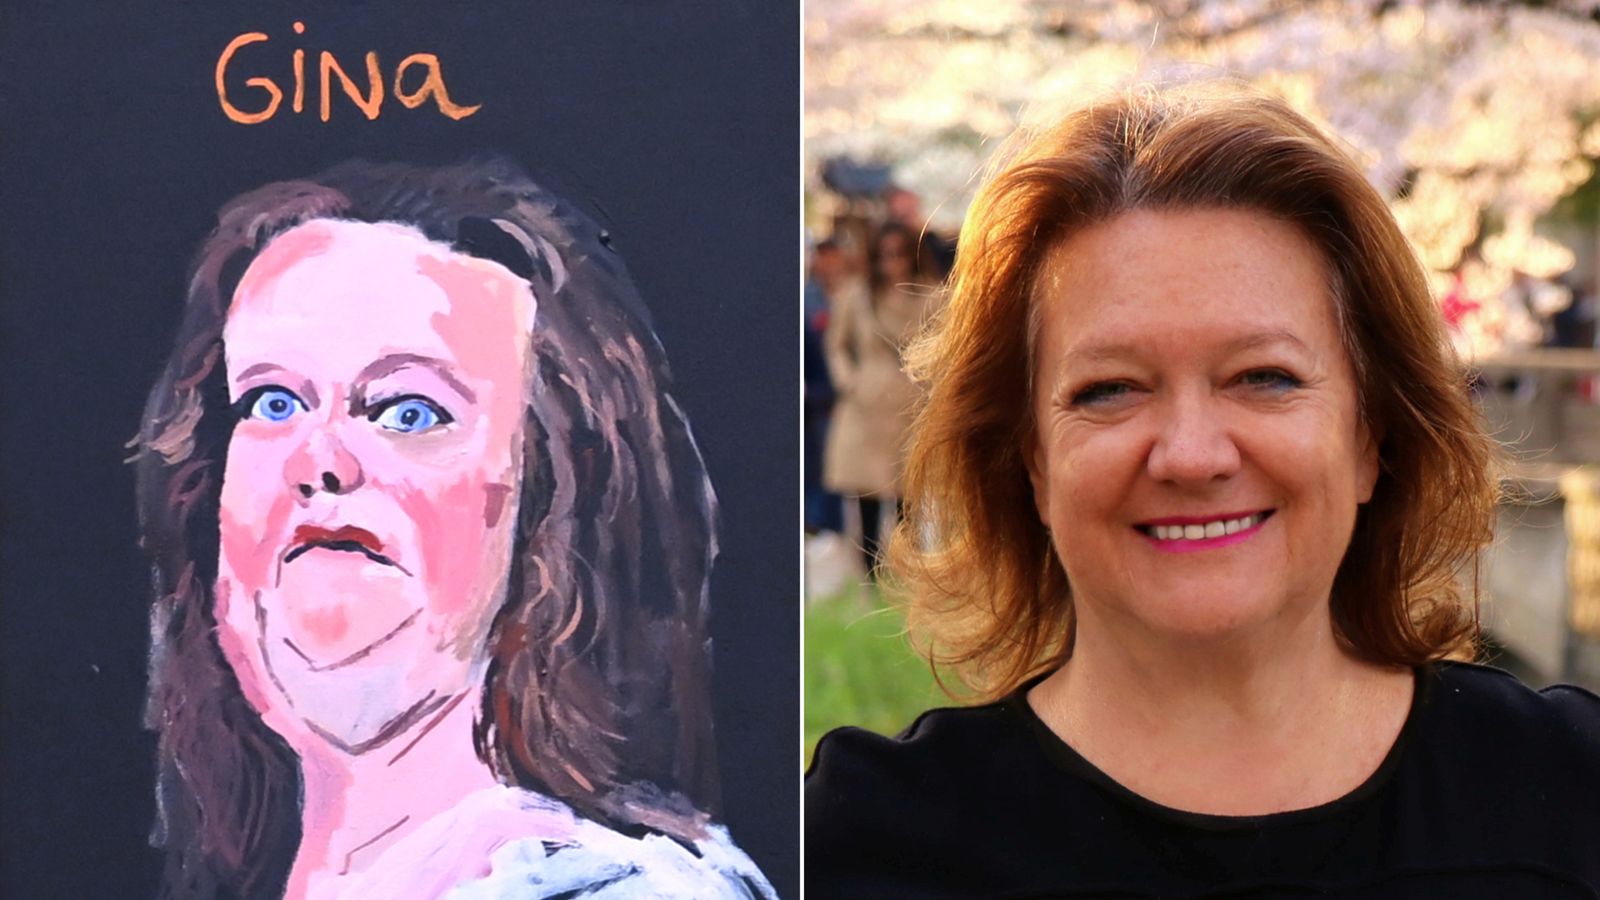 Australia's richest woman 'demands' gallery removes her portrait